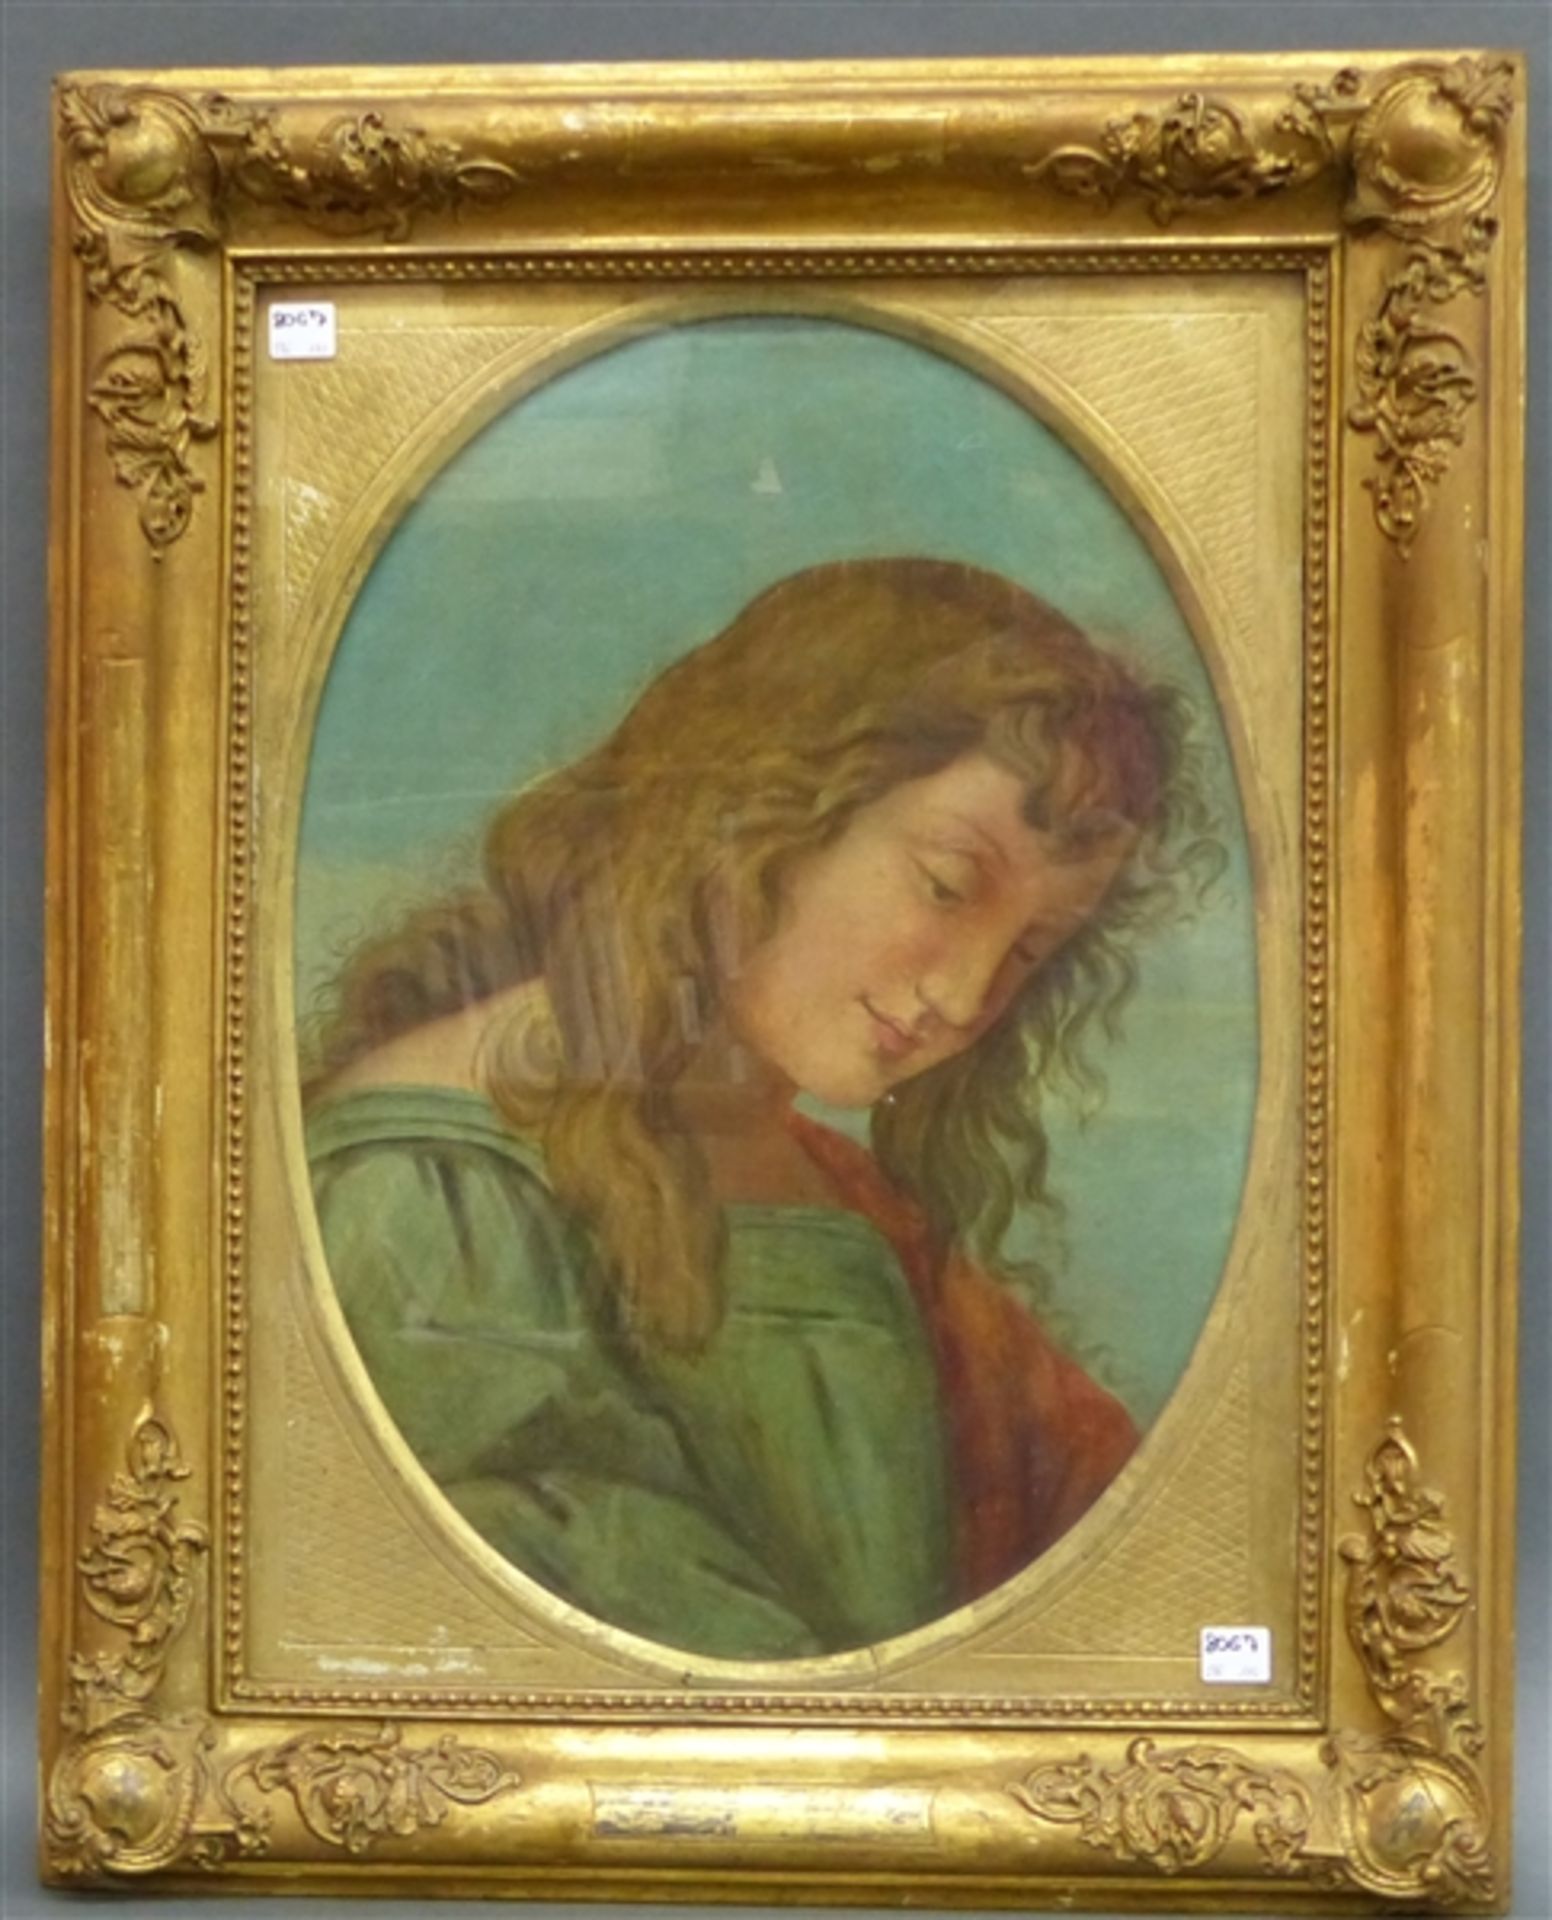 Heiligenmaler, 18. Jh. Öl auf Leinwand, Porträt eines herabschauenden Engels, ovaler Bildausschnitt,